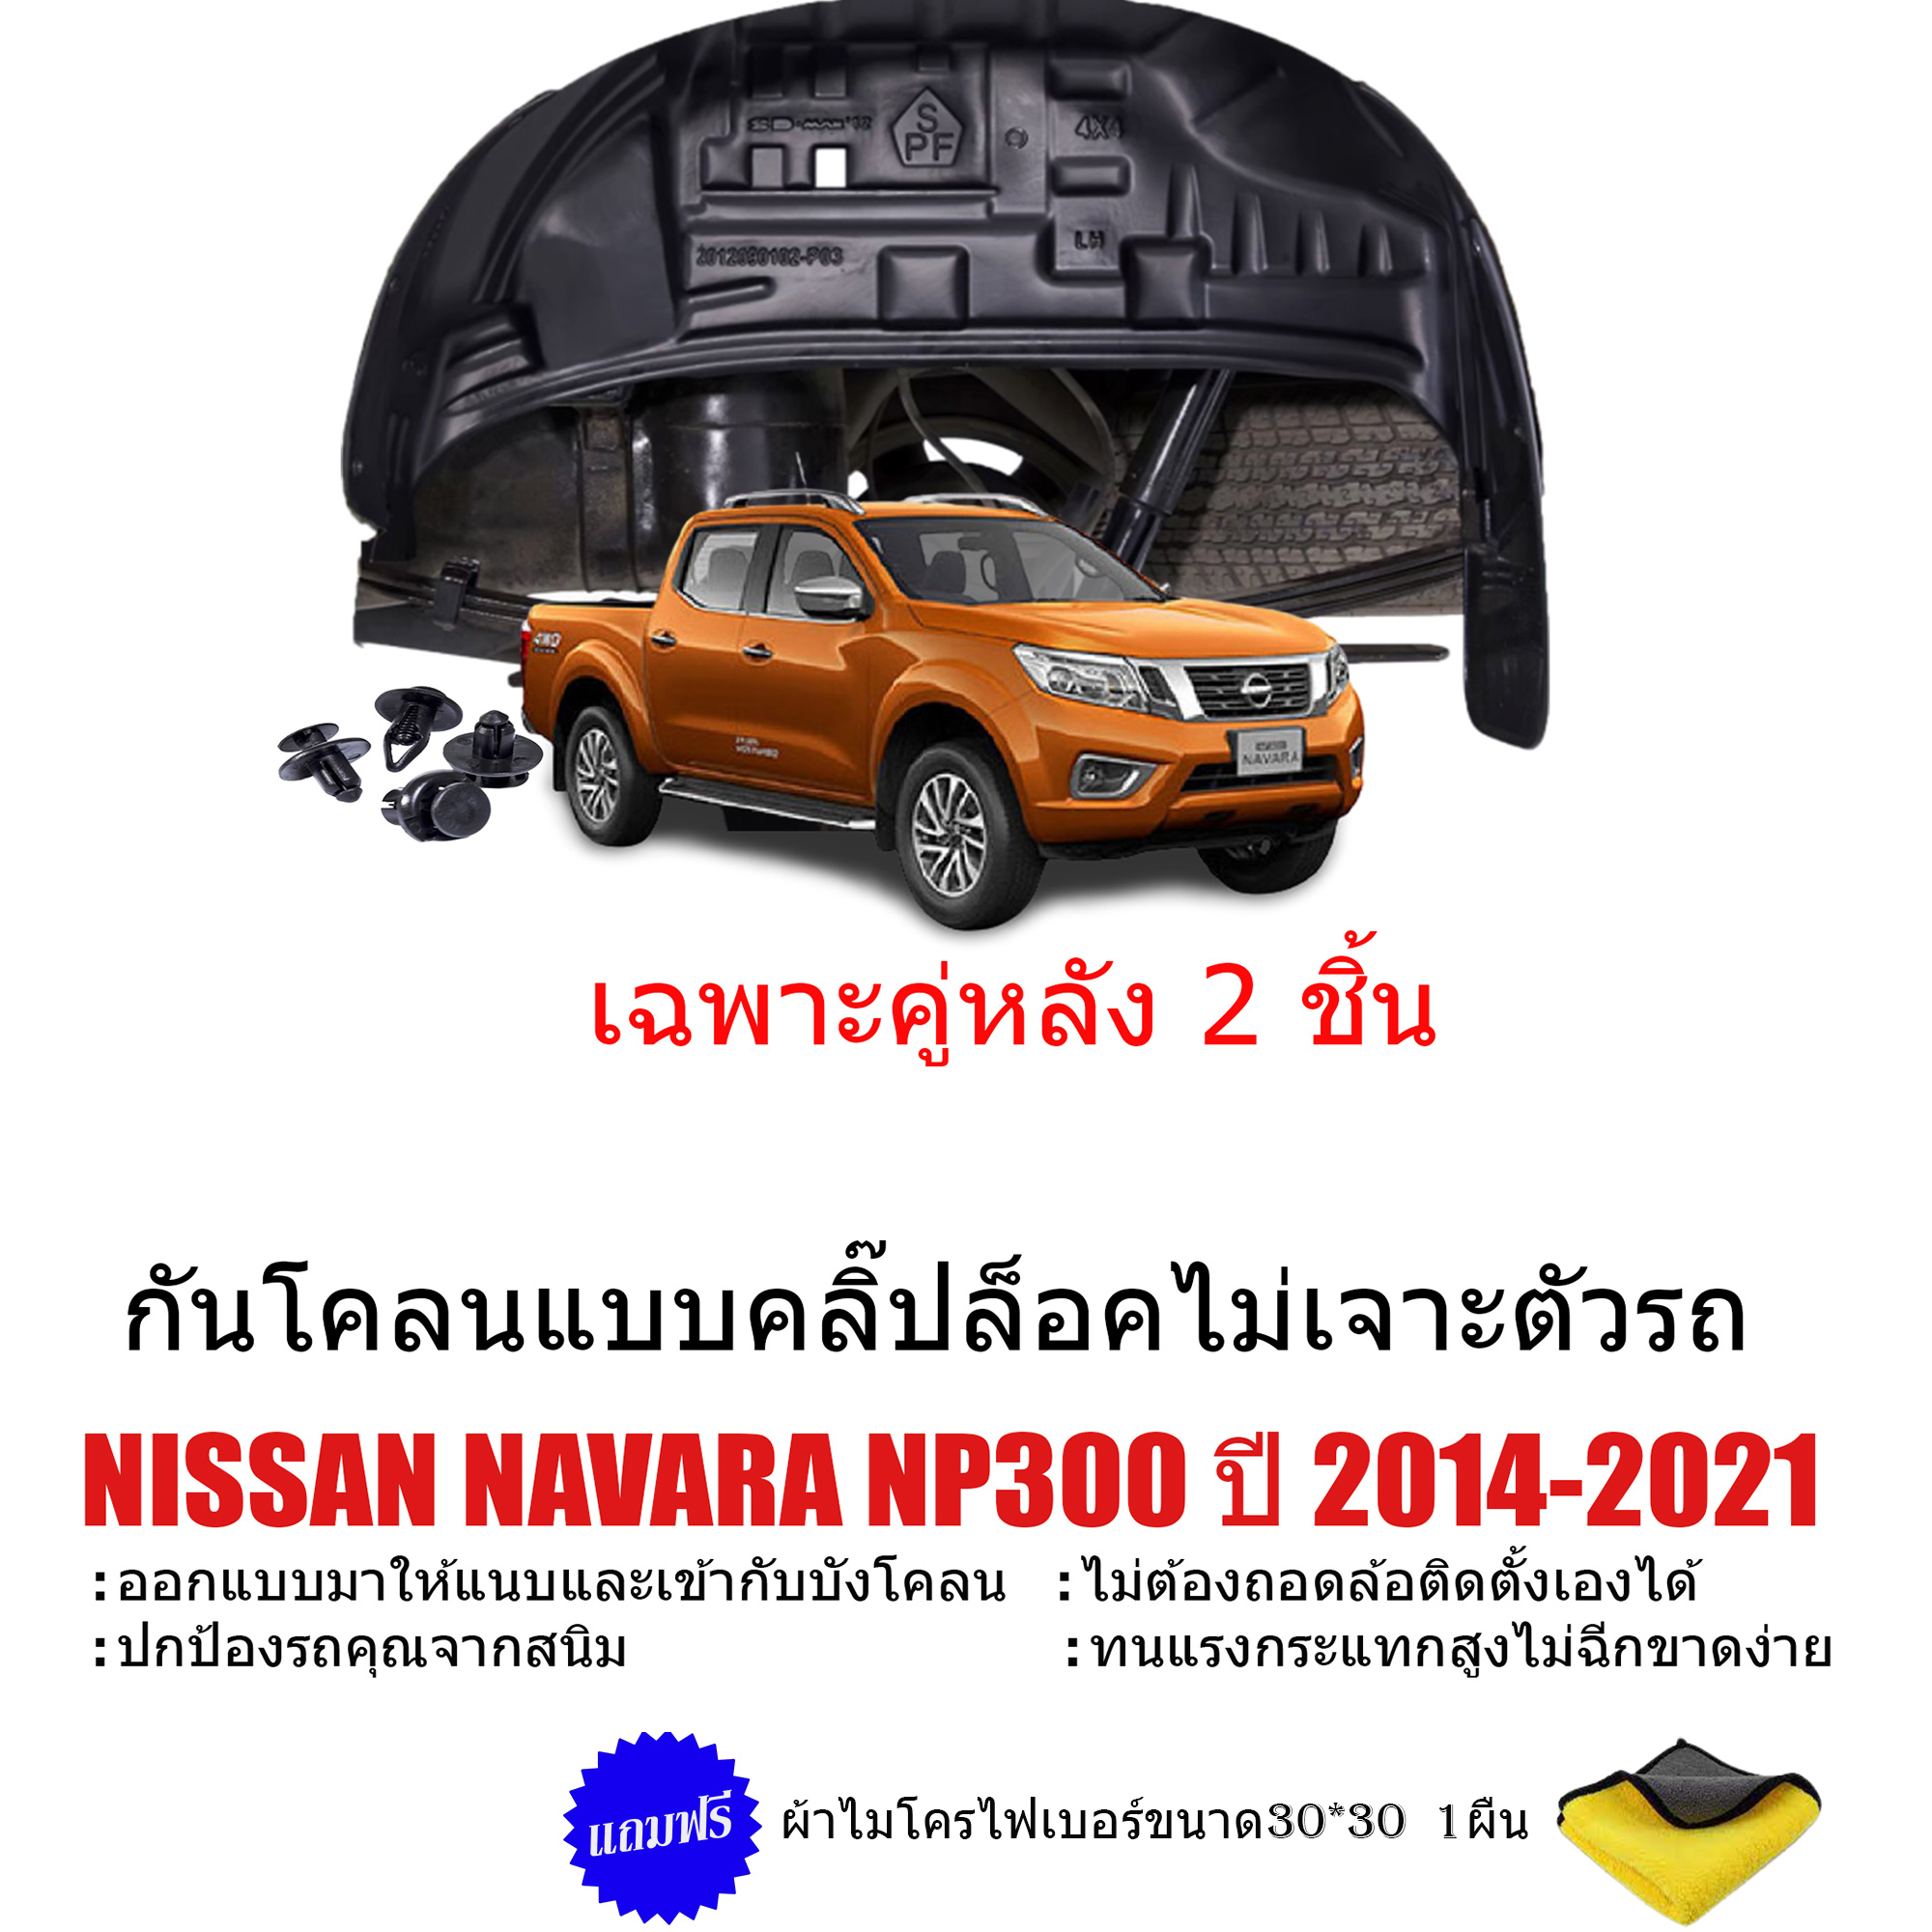 กันโคลนรถยนต์ NISSAN NAVARA NP300 ปี 2014-2020 (เฉพาะคู่หลัง) (แบบคลิ๊ปล็อคไม่ต้องเจาะตัวรถ) สำหรับ CAB , 4D, ตอนเดียว กรุล้อ ซุ้มล้อ กันโคลน บังโคลน